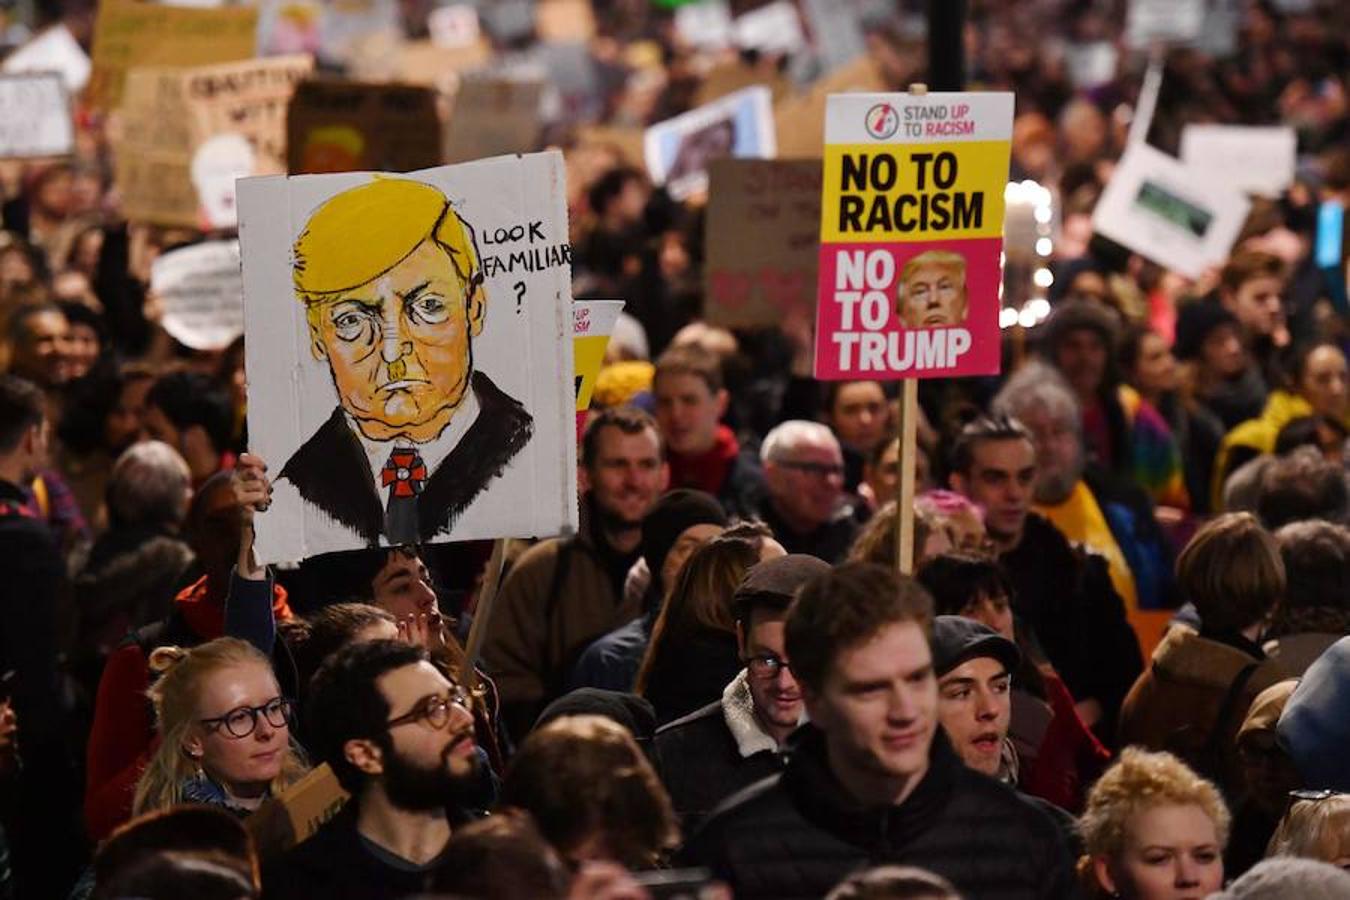 Un grupo manifestantes protesta frente a Downing Street contra el presidente estadounidense Donald Trump en el centro de Londres el 30 de enero de 2017. El presidente Trump firmó una orden ejecutiva el 27 de enero de 2016 restringiendo la inmigración de siete países musulmanes